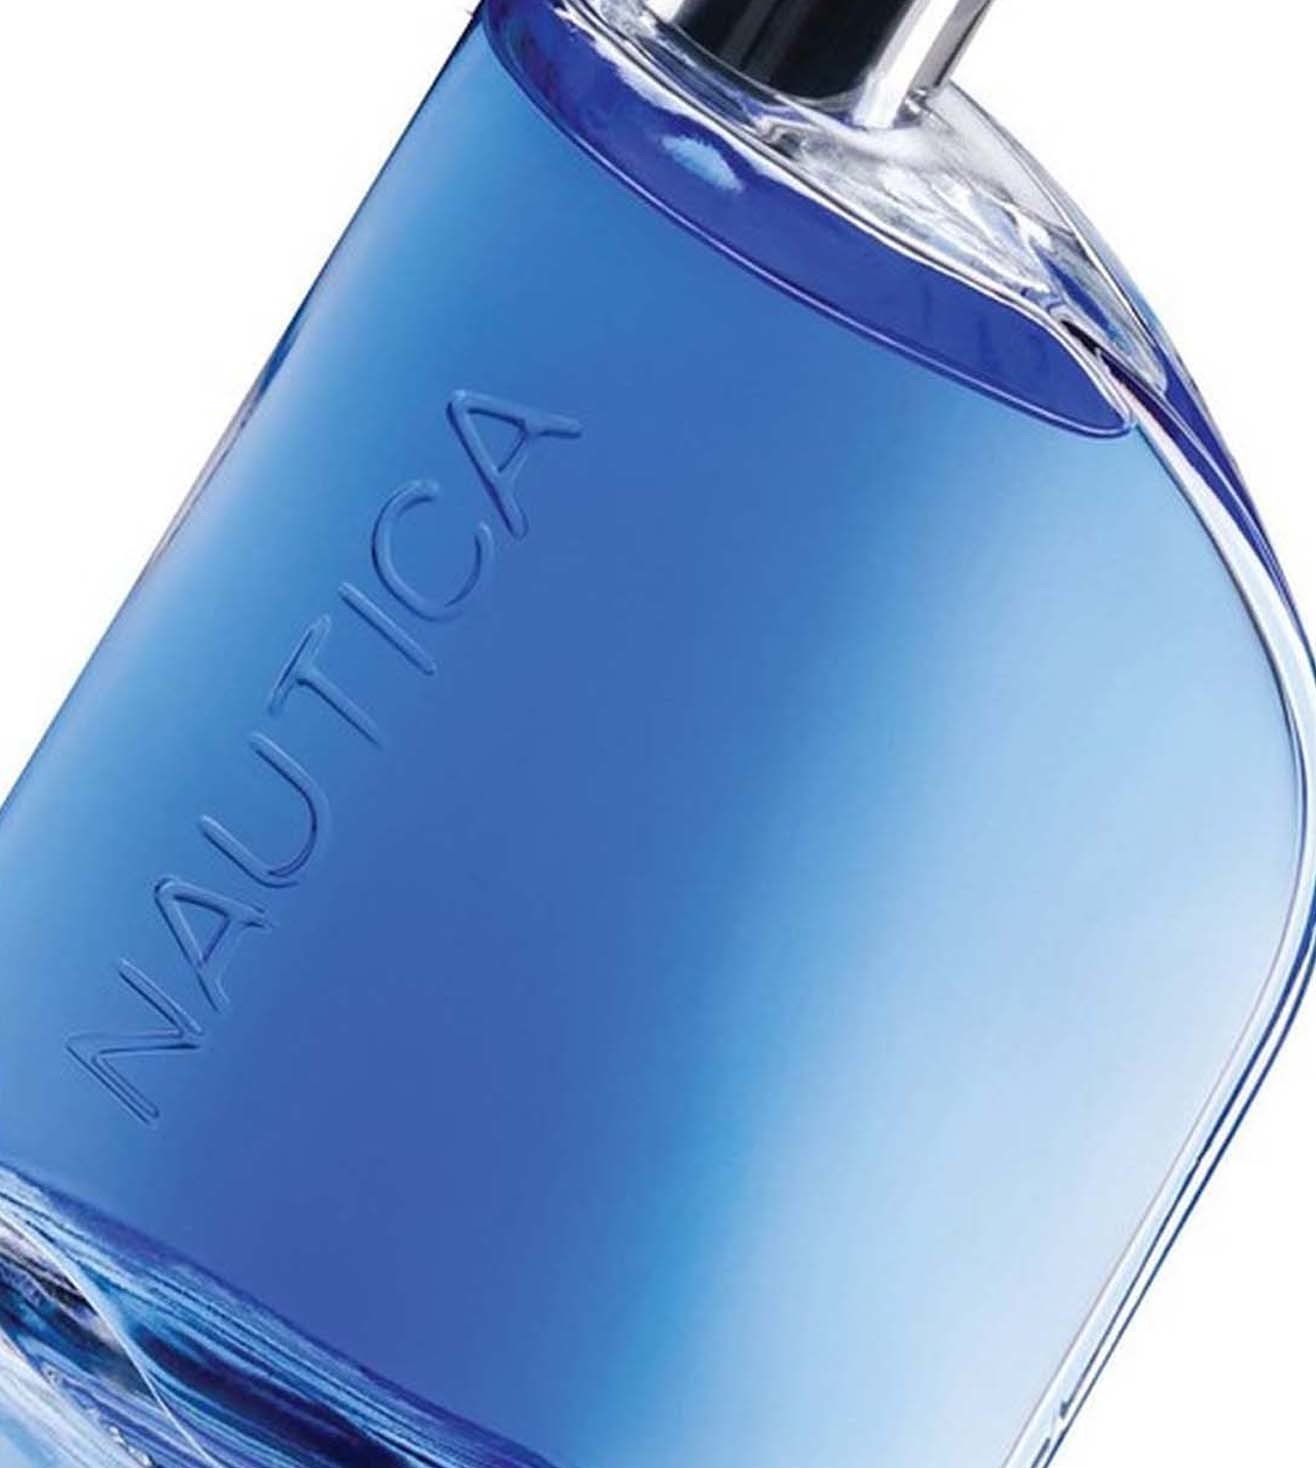 Nautica Blue - Nautica - Maximum Fragrance